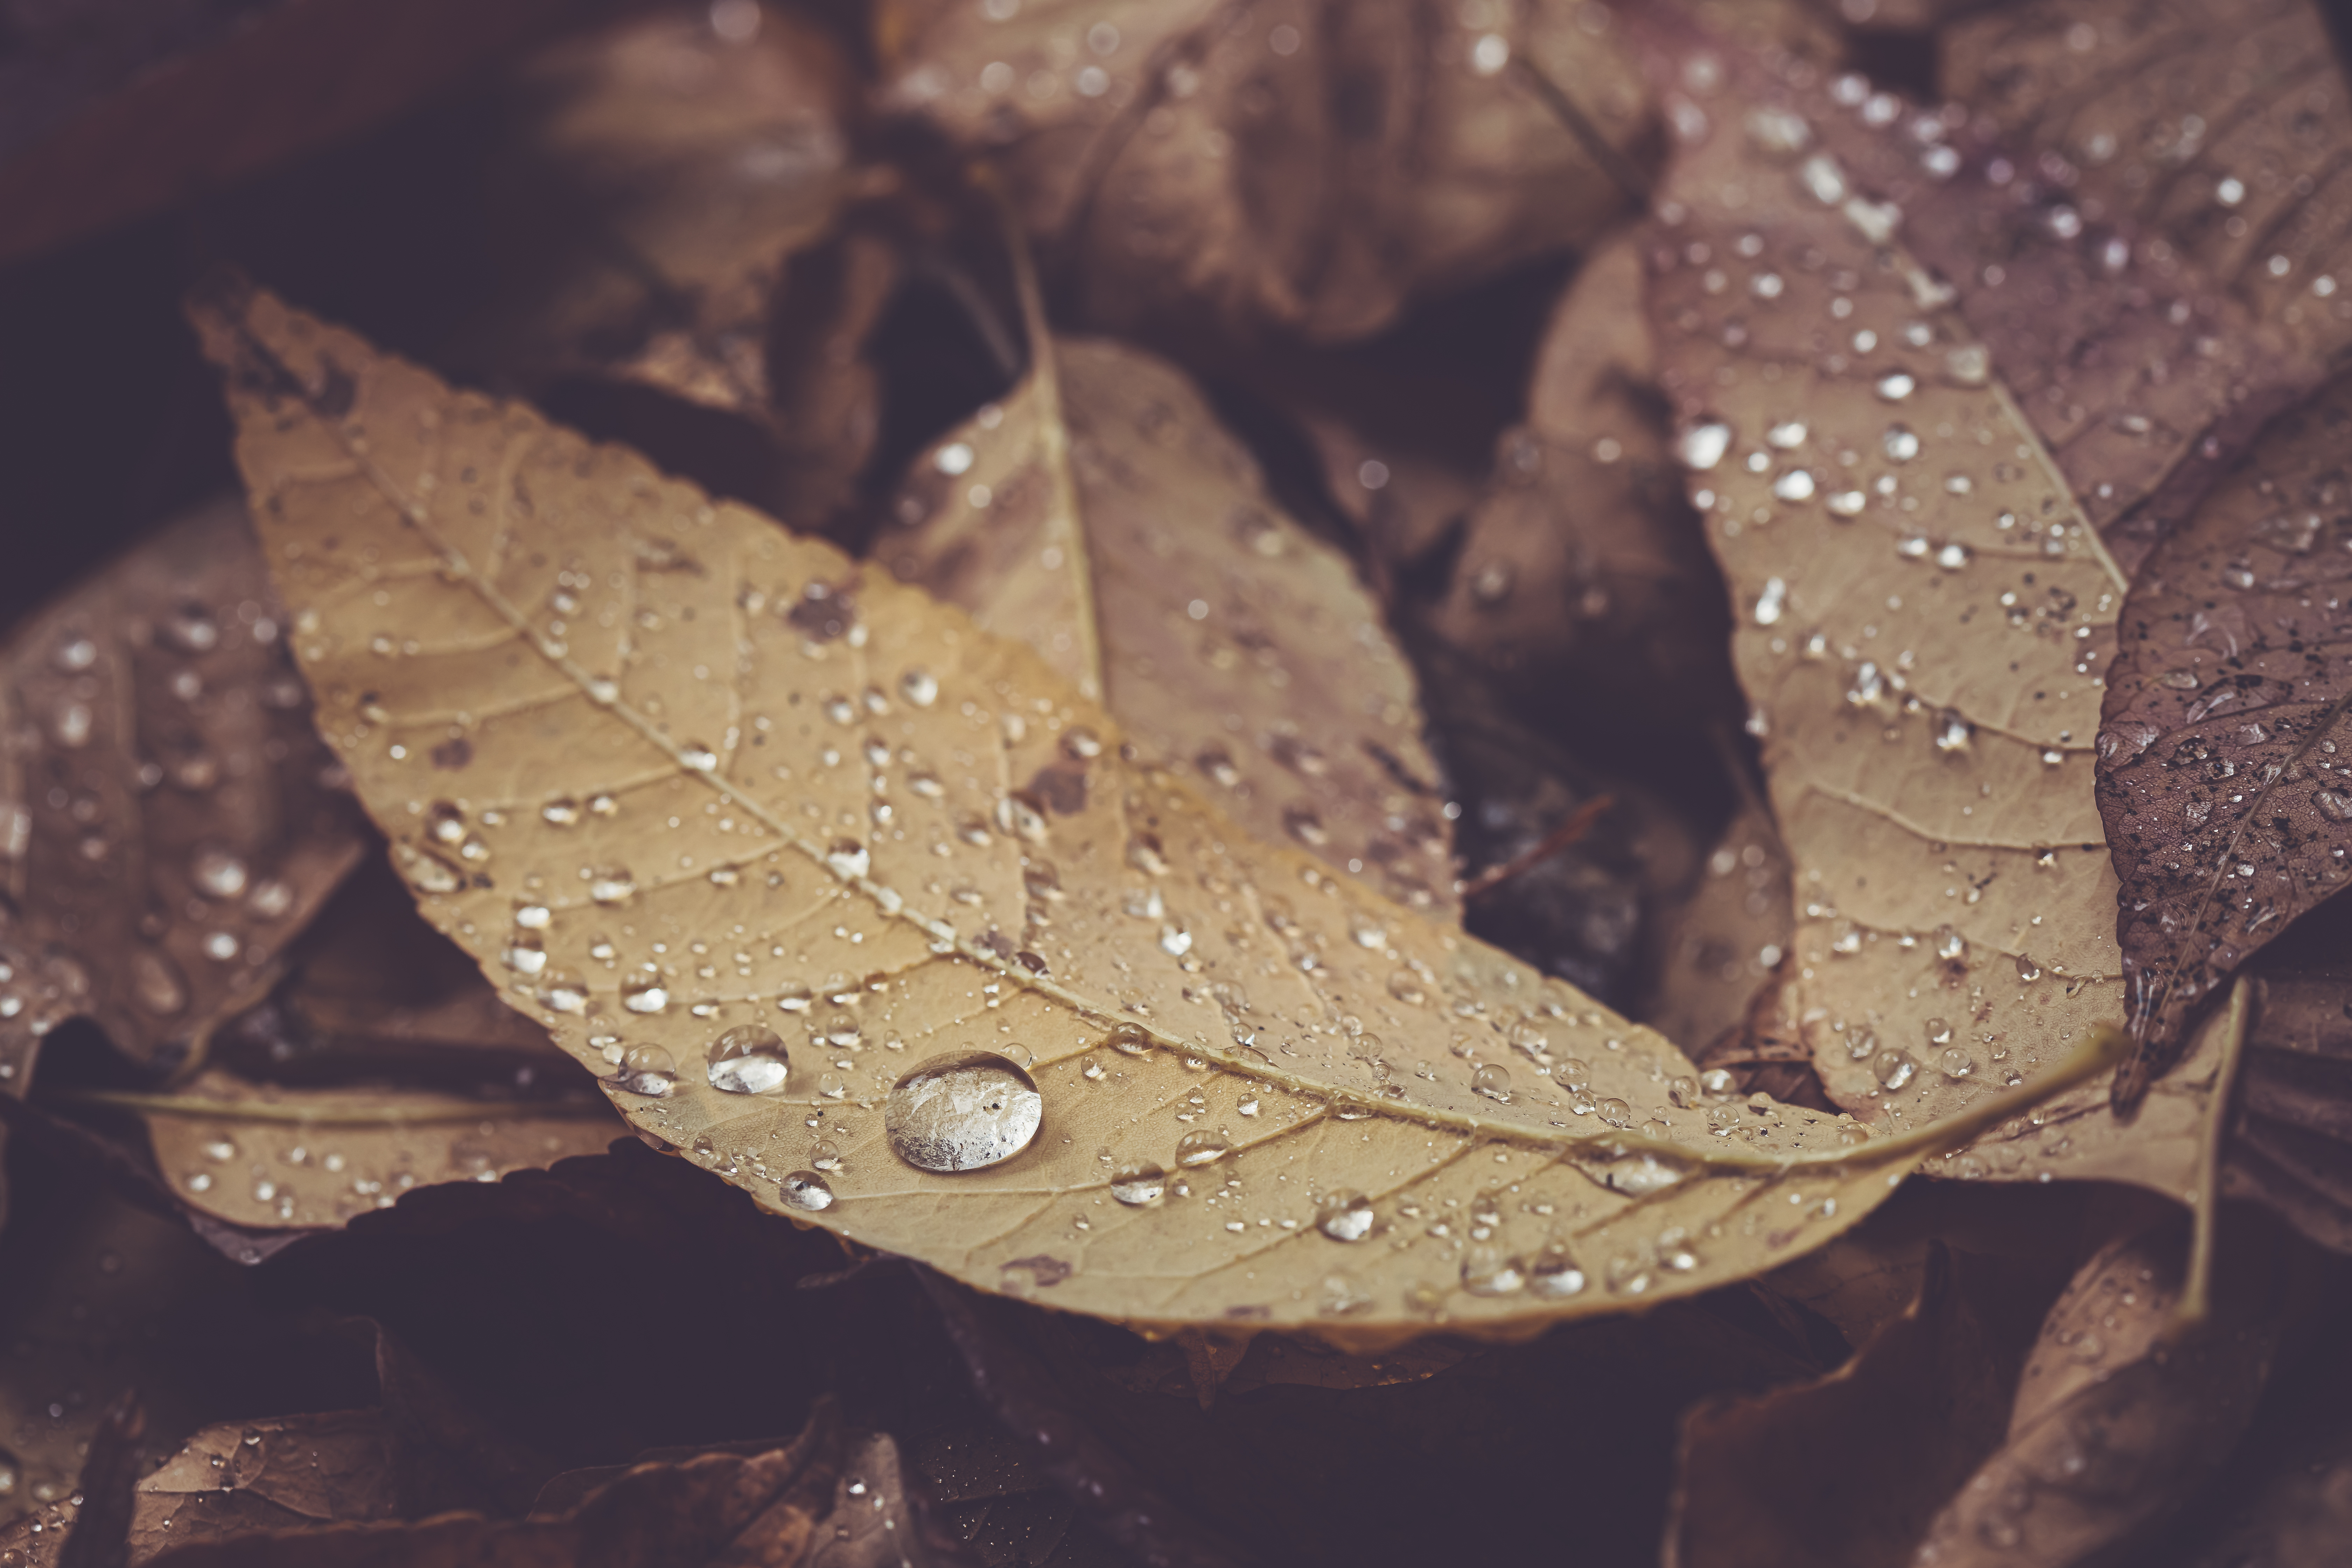 Осенние листья под дождем